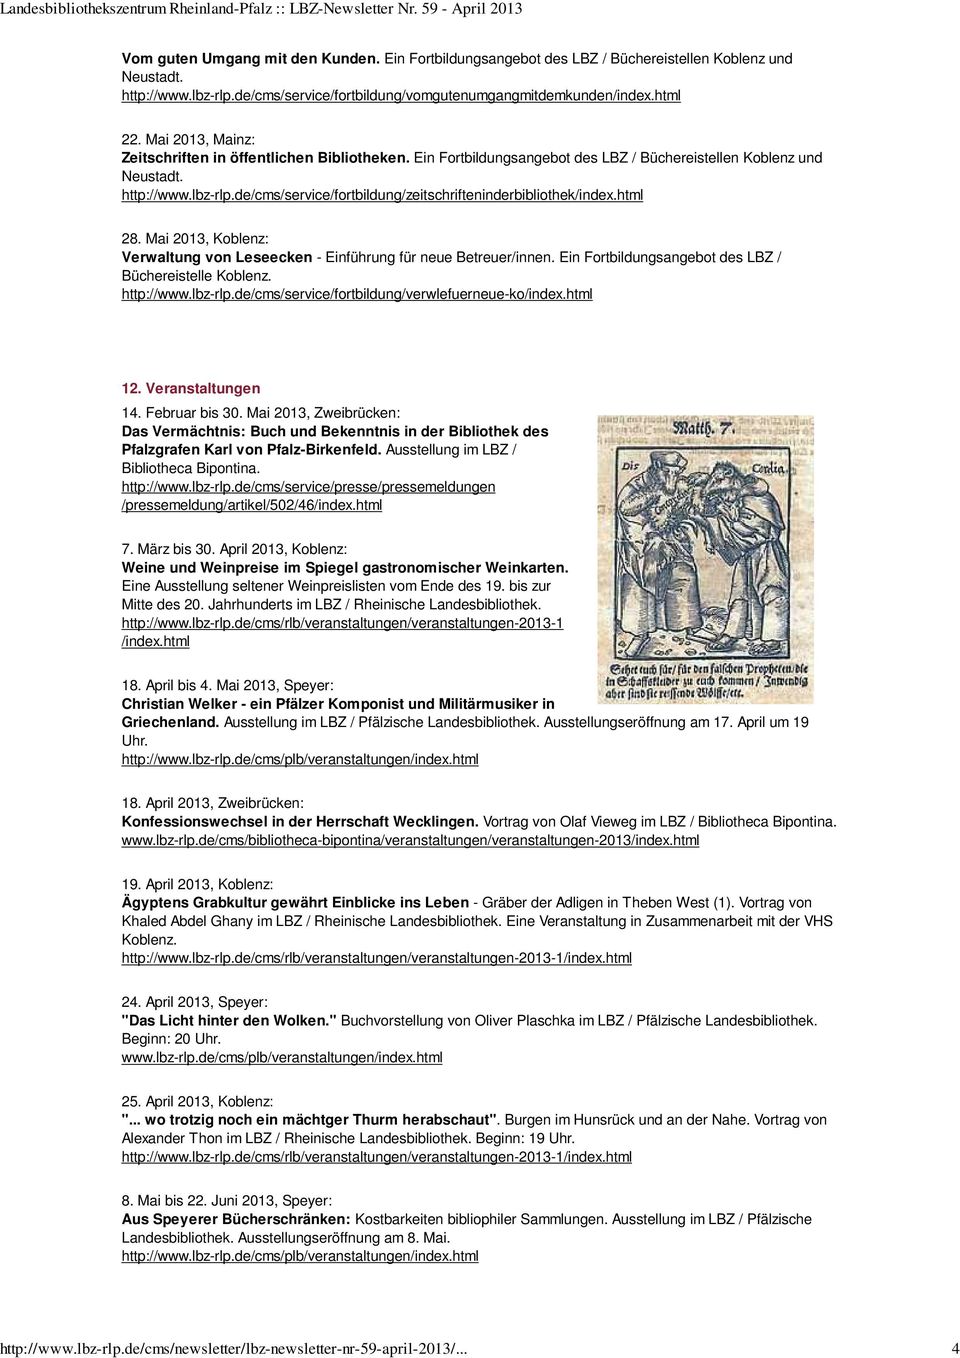 de/cms/service/fortbildung/zeitschrifteninderbibliothek/index.html 28. Mai 2013, Koblenz: Verwaltung von Leseecken - Einführung für neue Betreuer/innen.